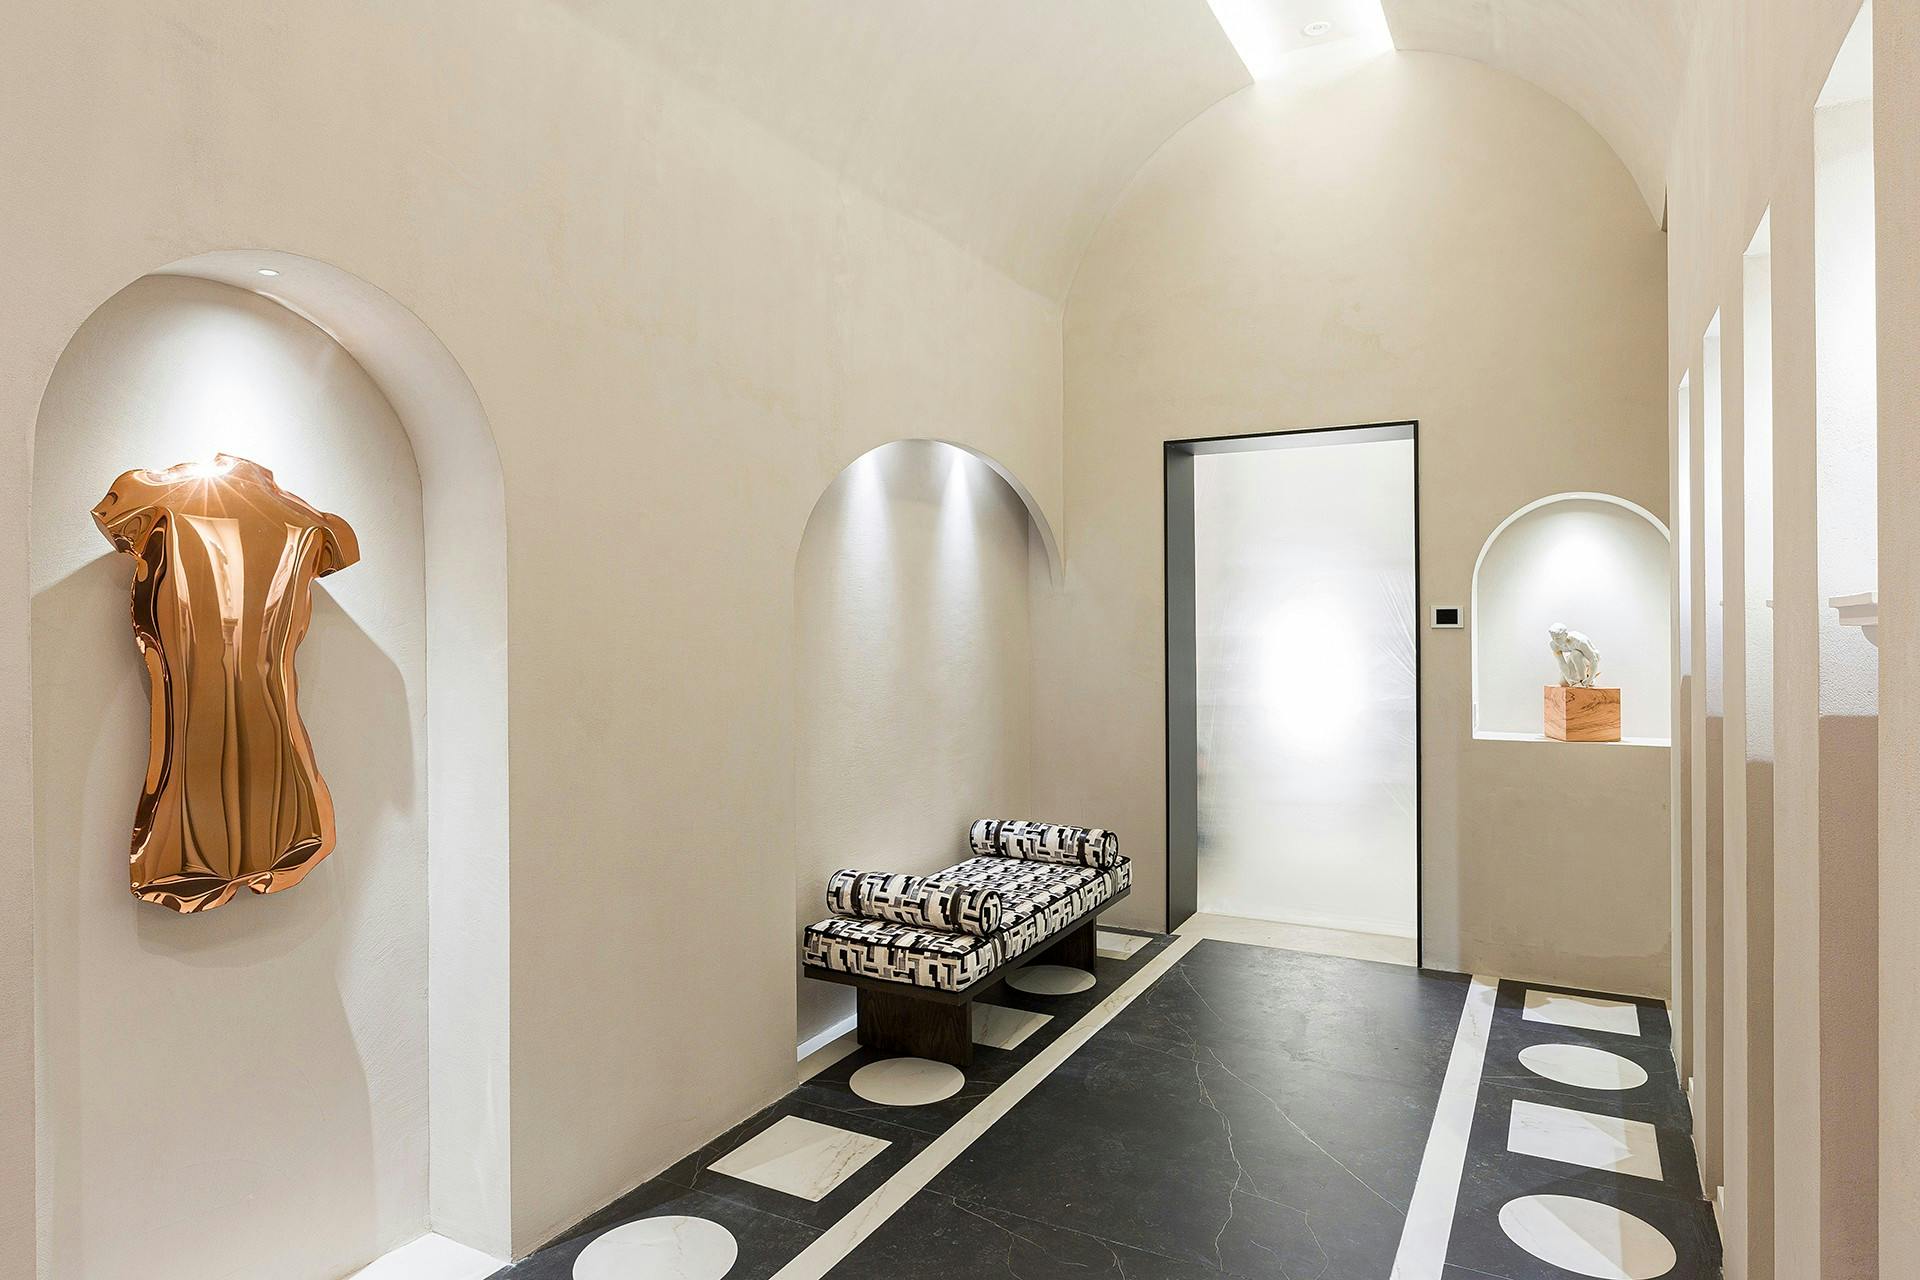 Imagen número 76 de Un baño público contemporáneo inspirado en las termas romanas